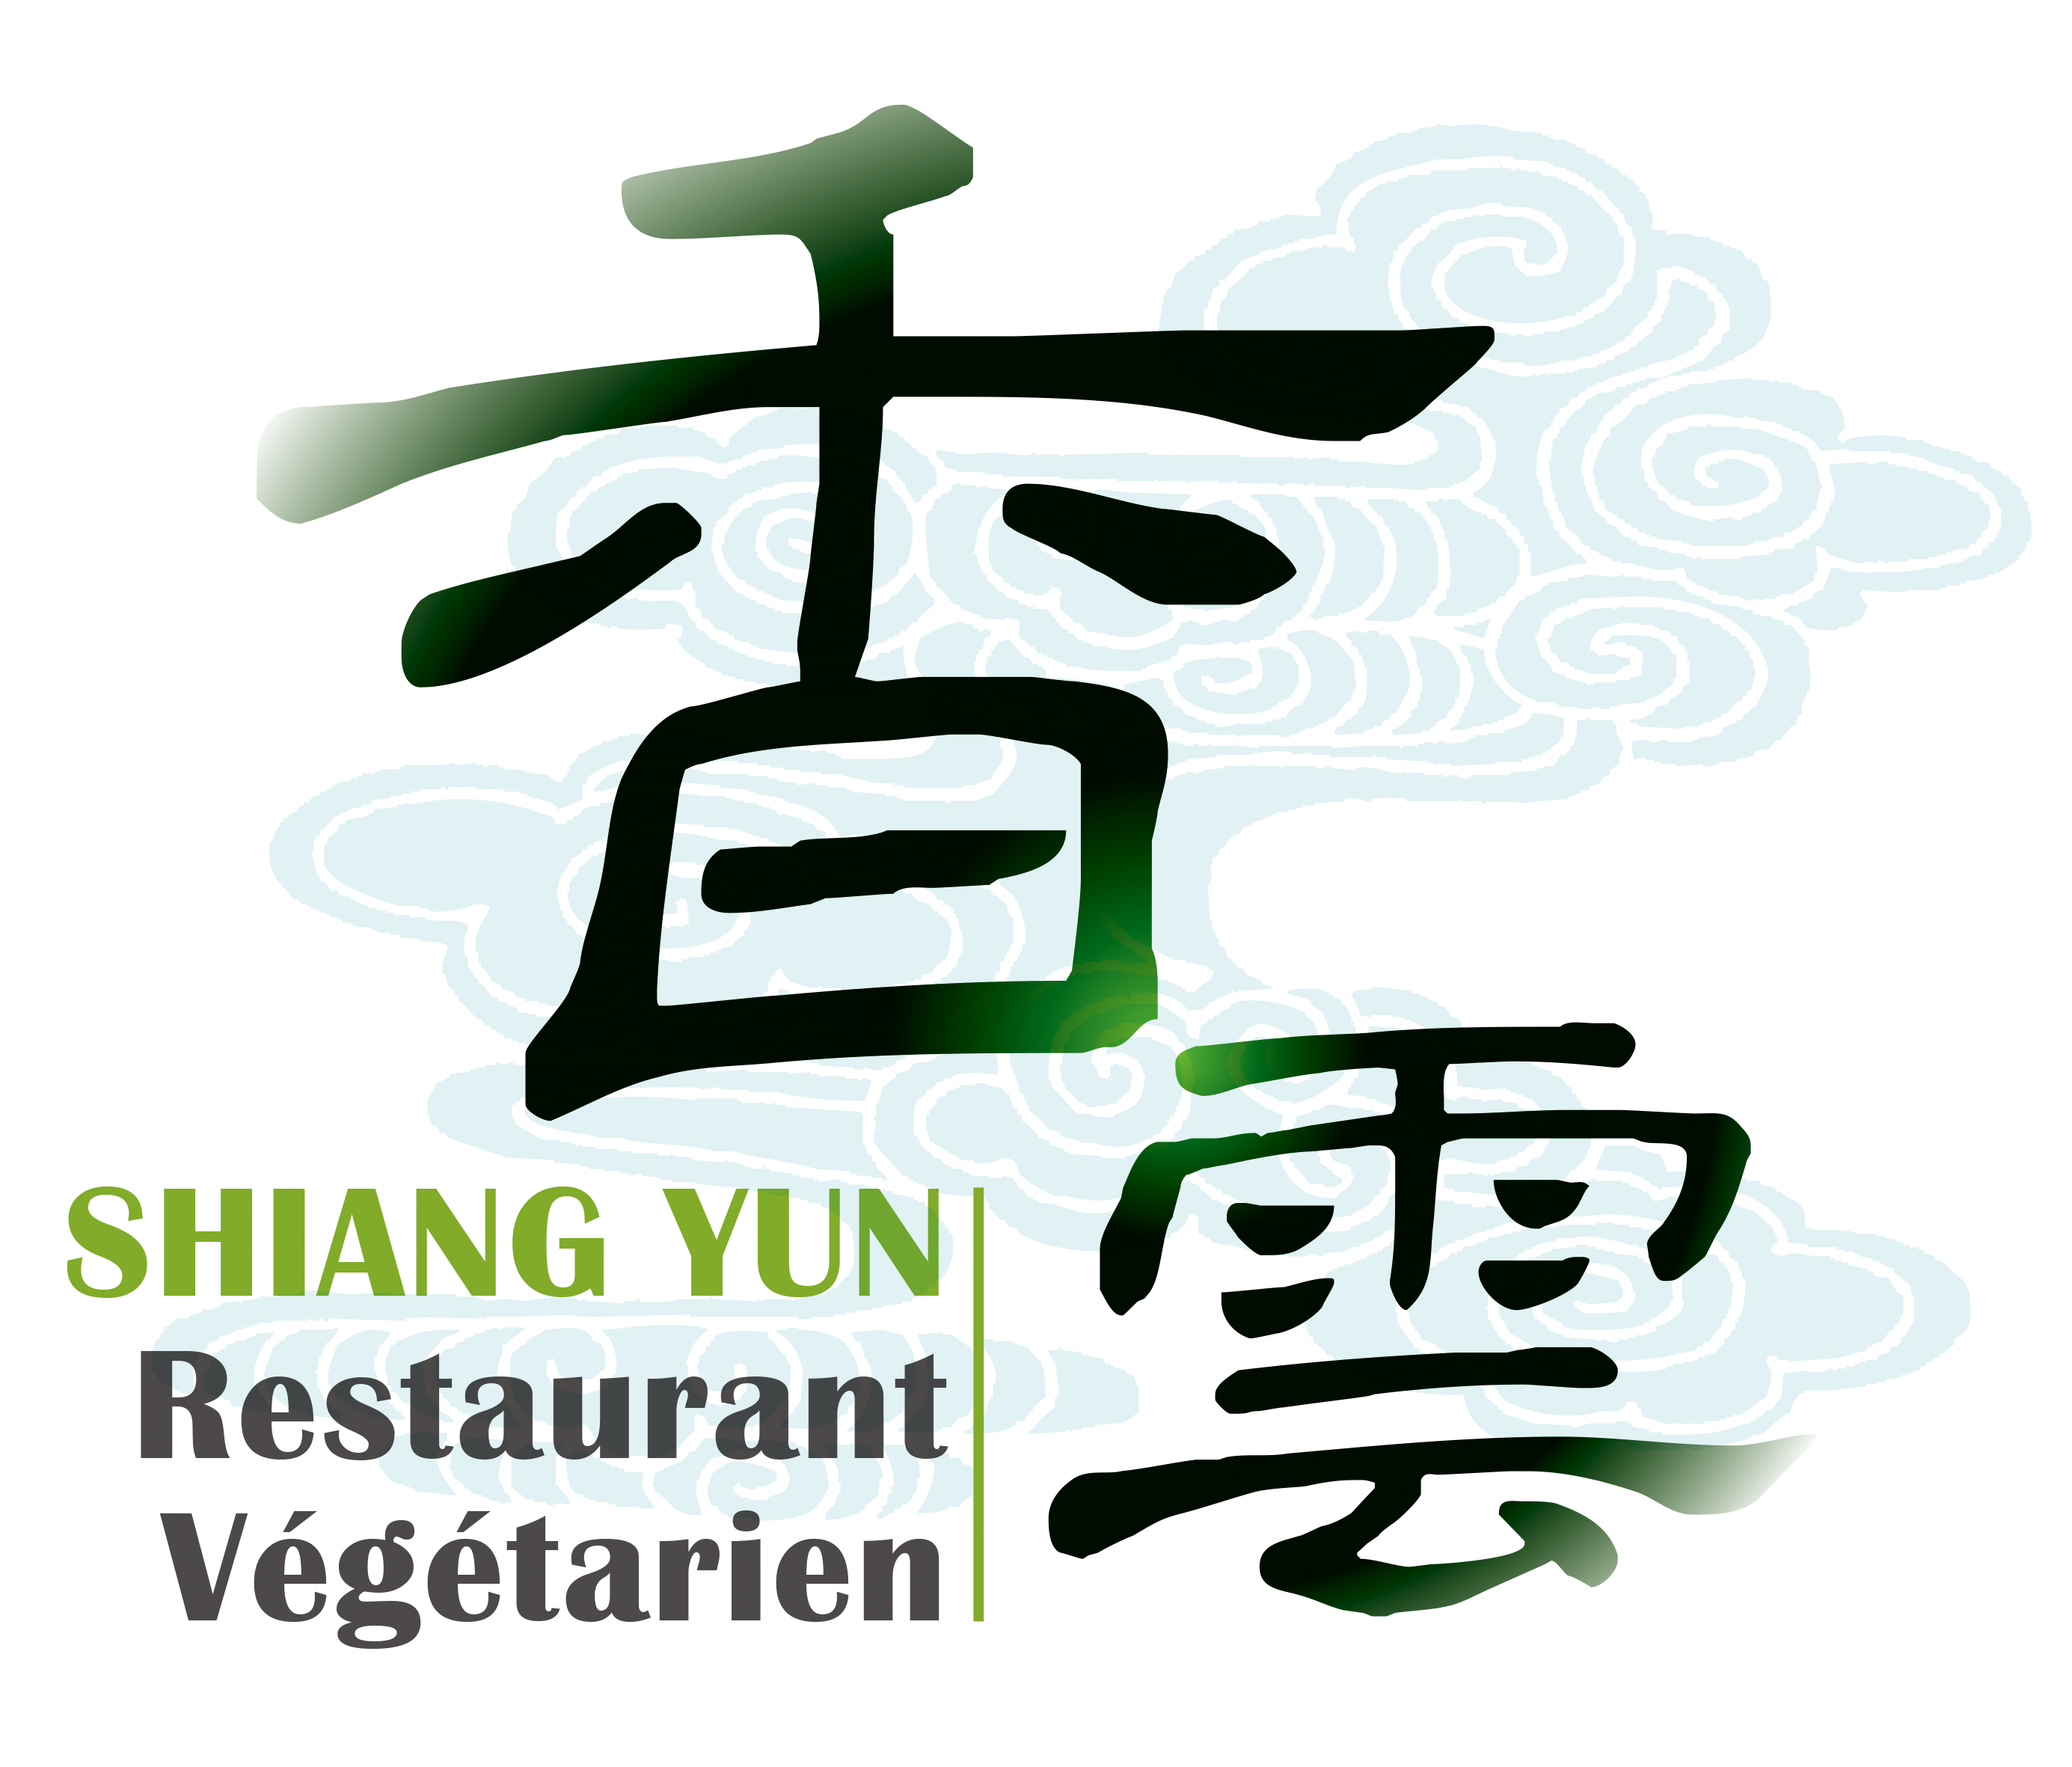 香雲滴水坊 Shiang Yun Restaurant Végétarien